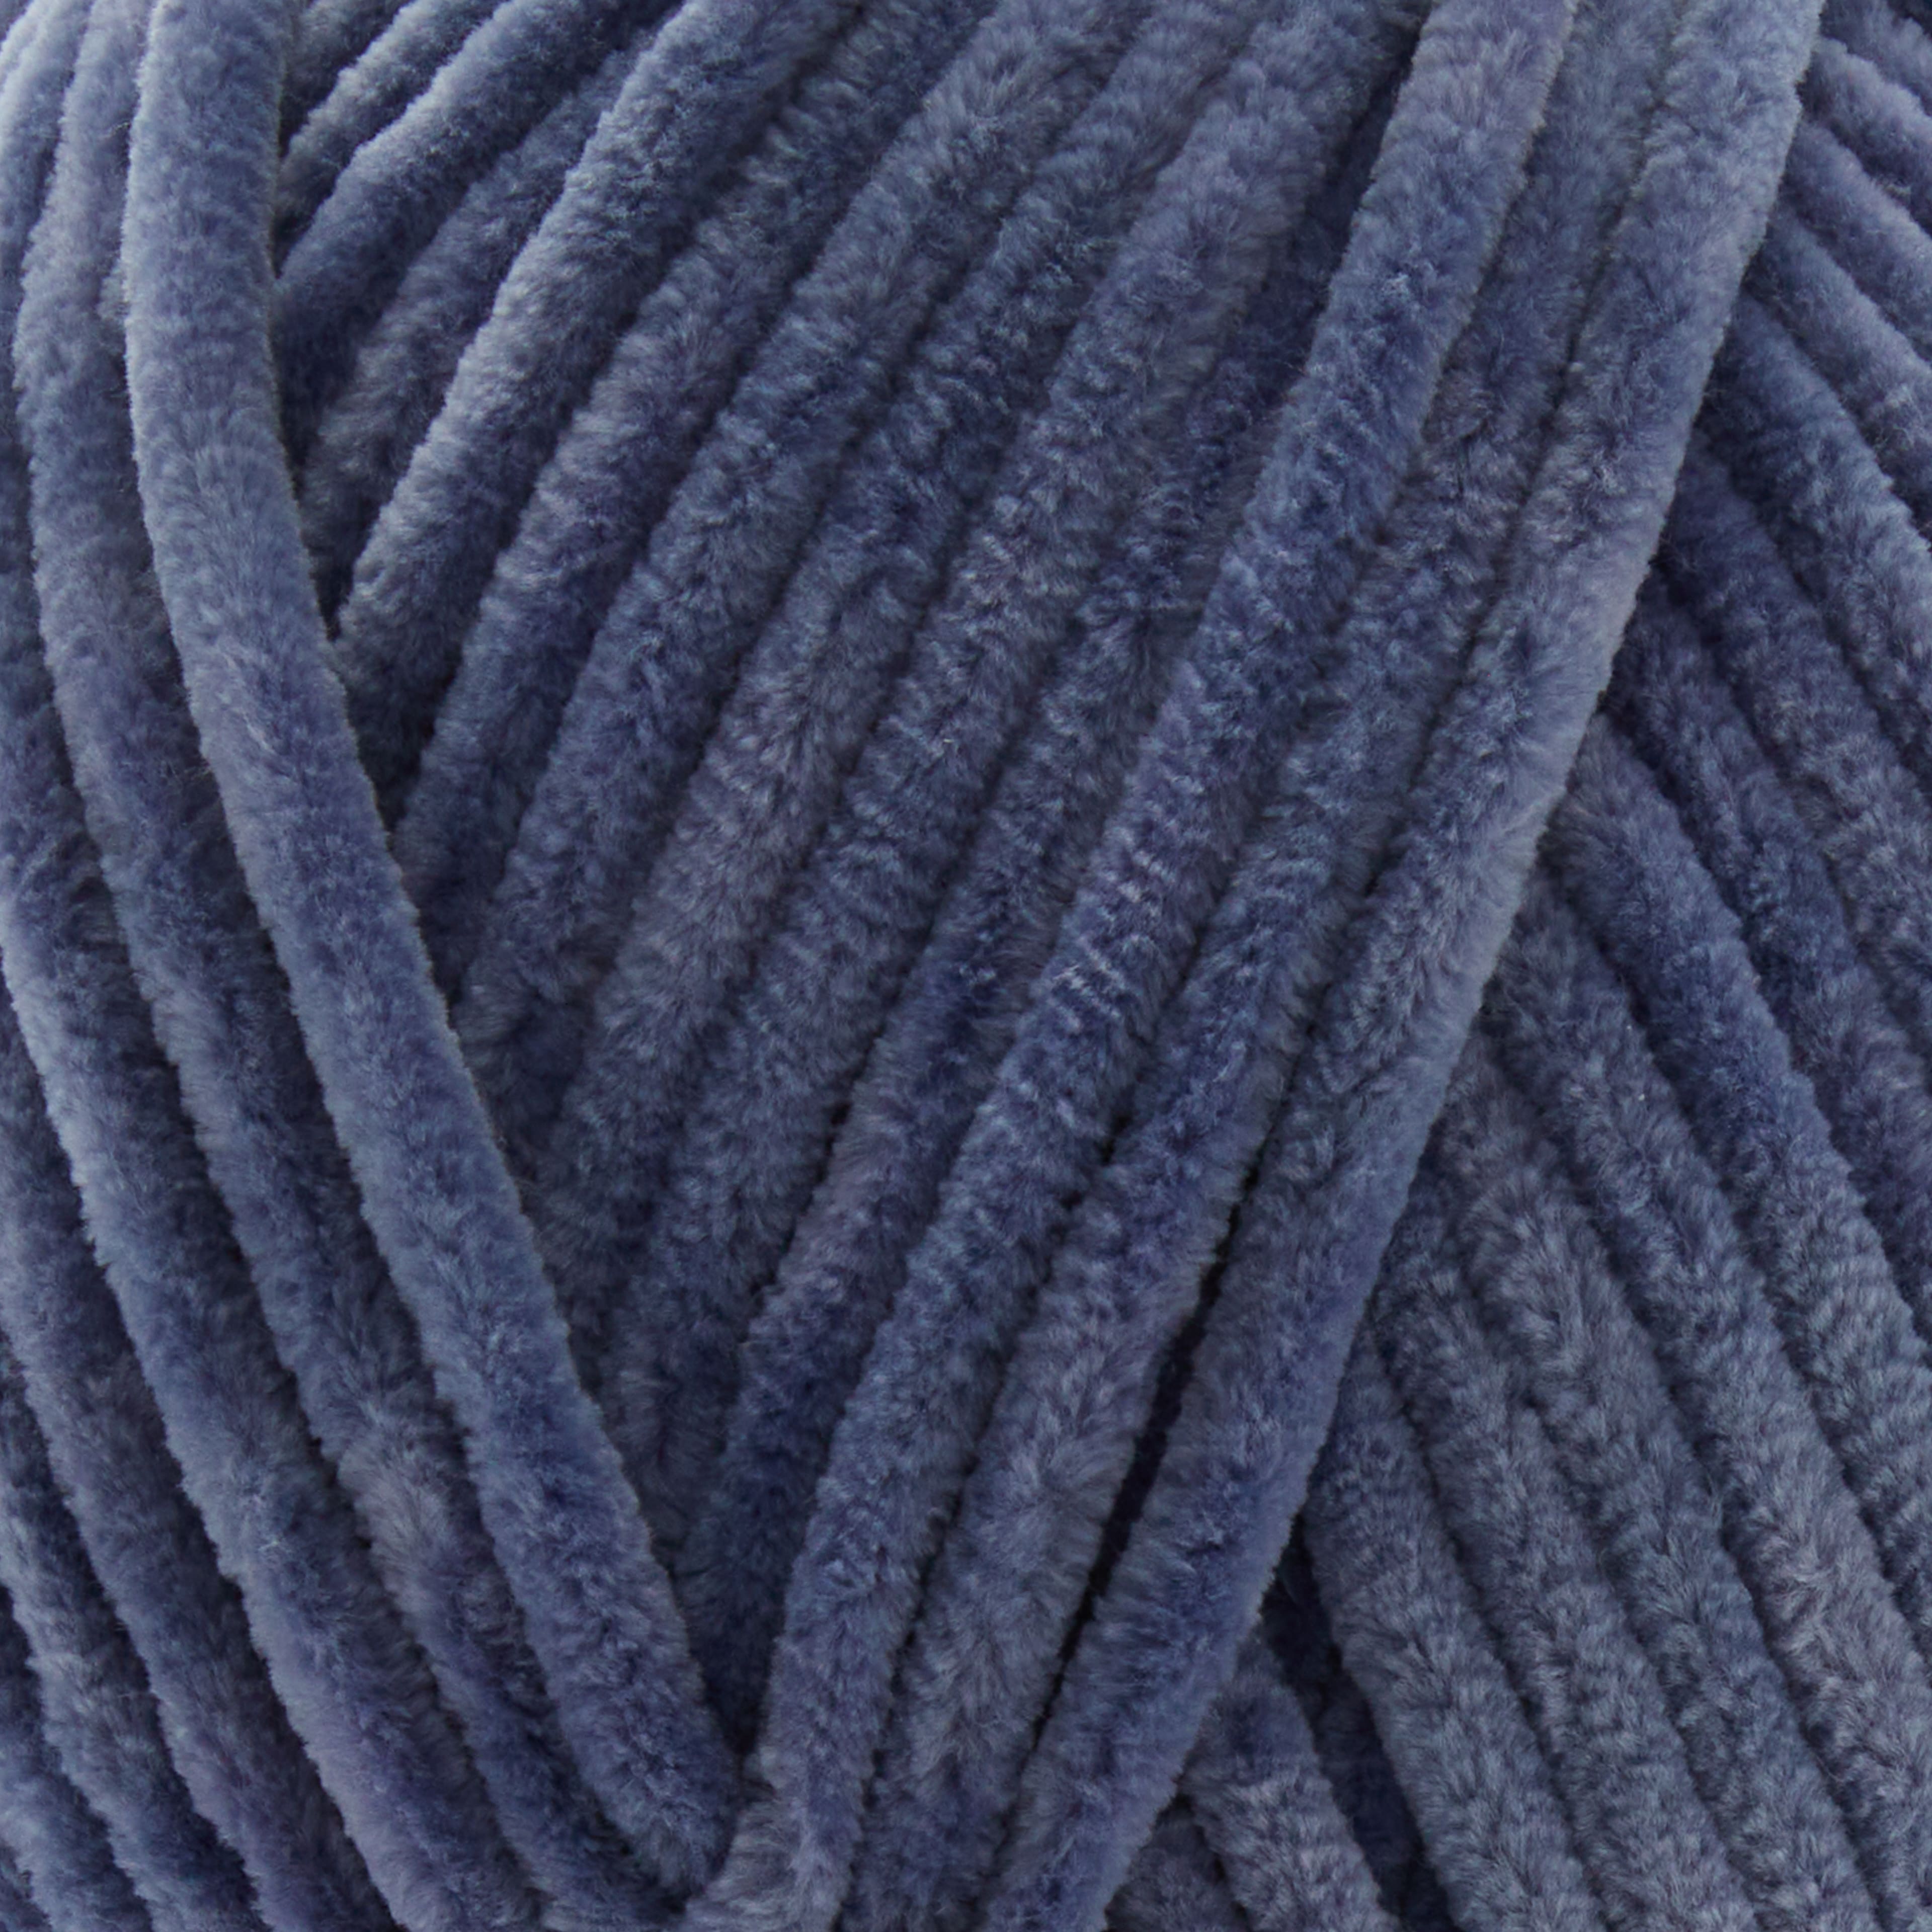 Sweet Snuggles Lite™ Multi Yarn by Loops & Threads®